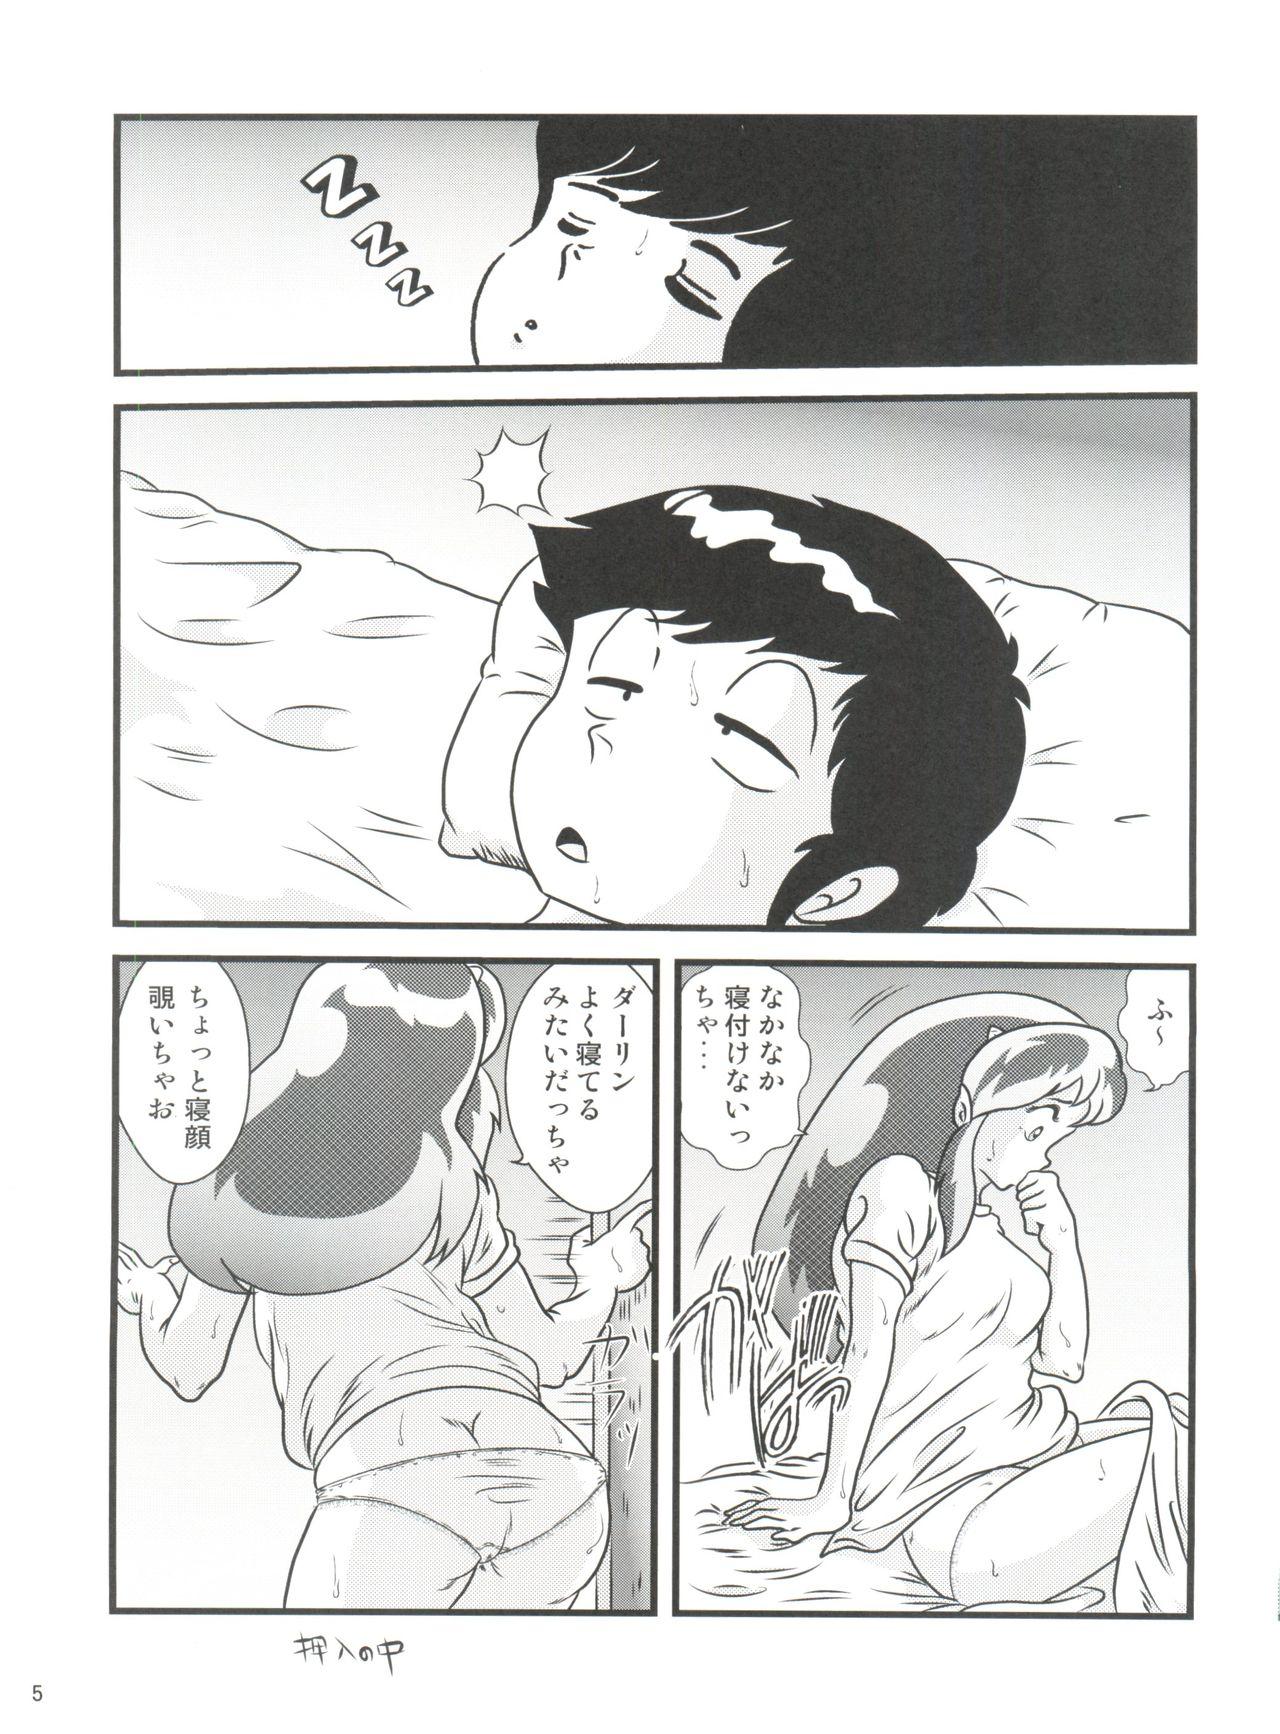 Les Fairy 3R - Urusei yatsura Cock Suck - Page 5